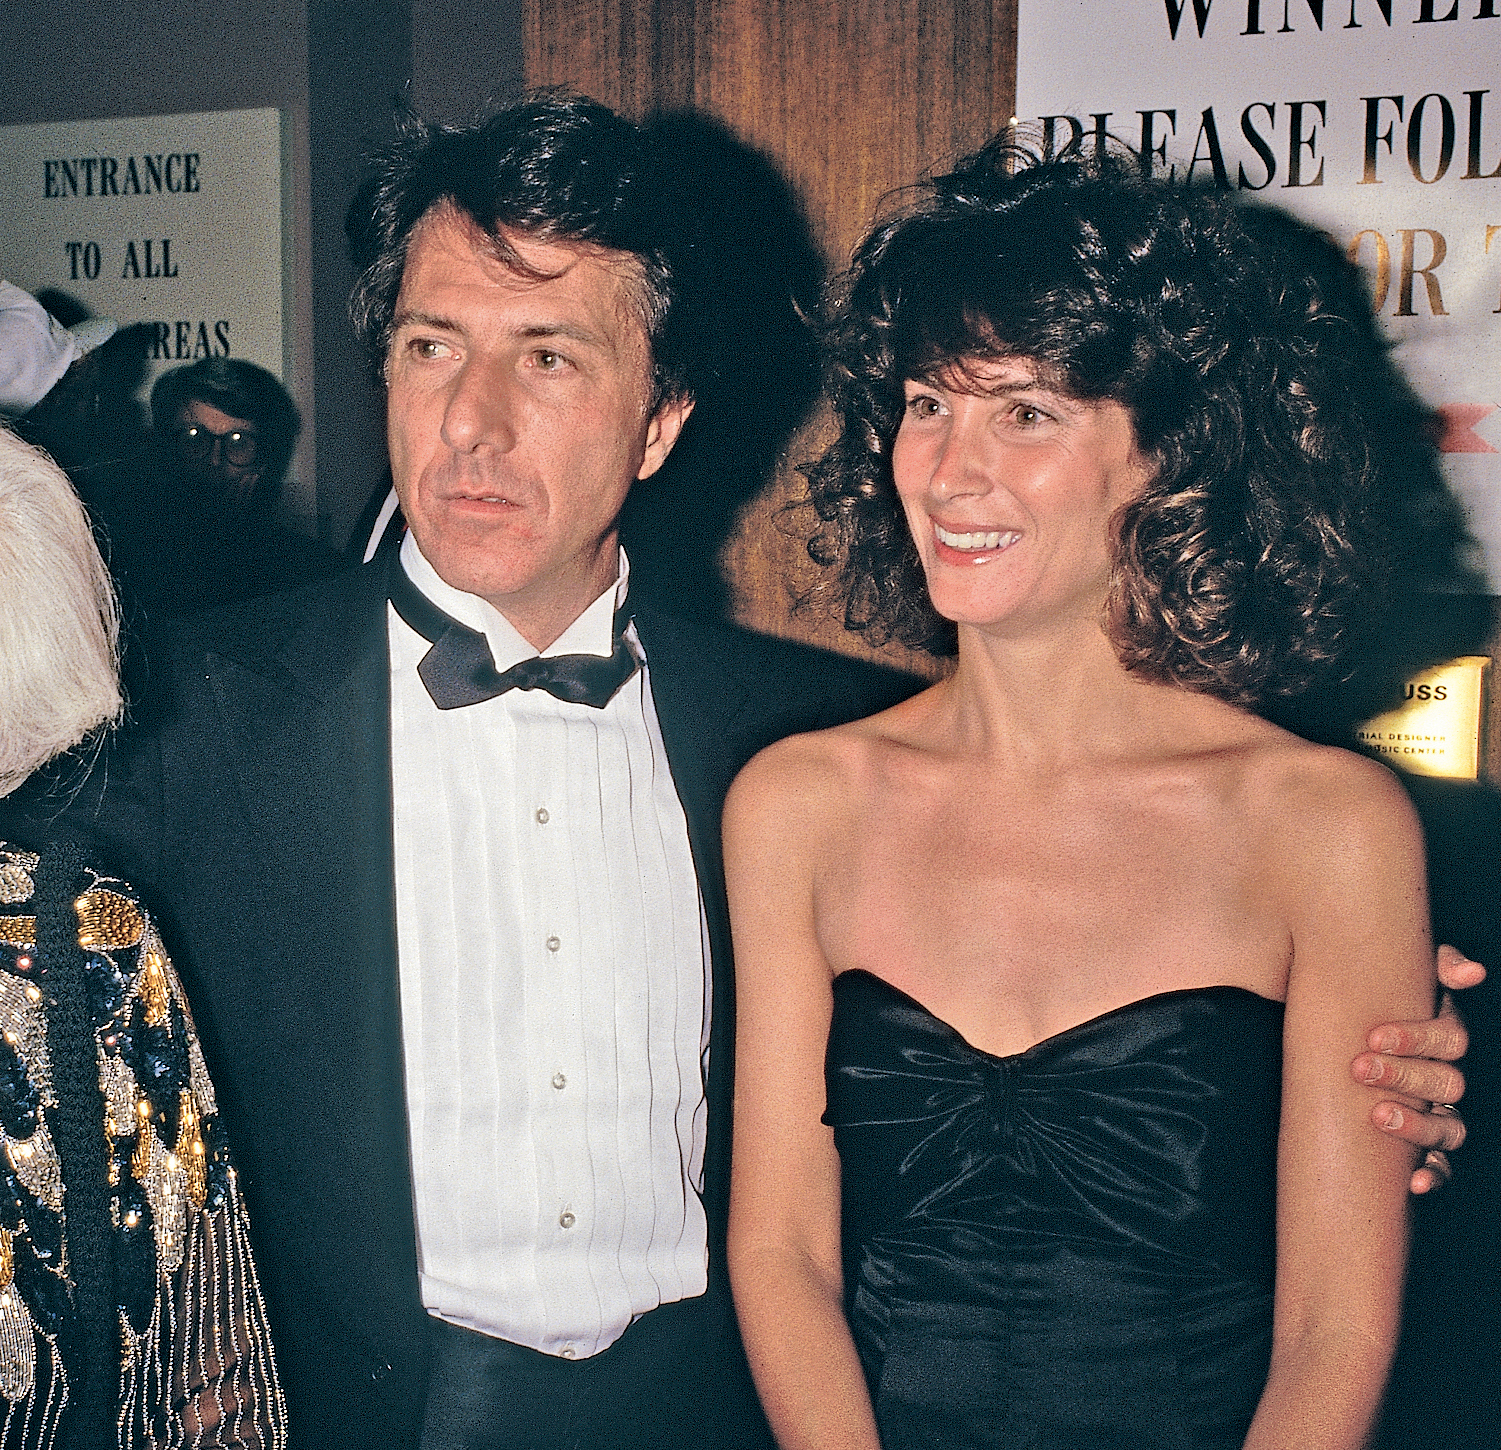 Der Schauspieler und die Frau bei der Oscarverleihung 1987. | Quelle: Getty Images